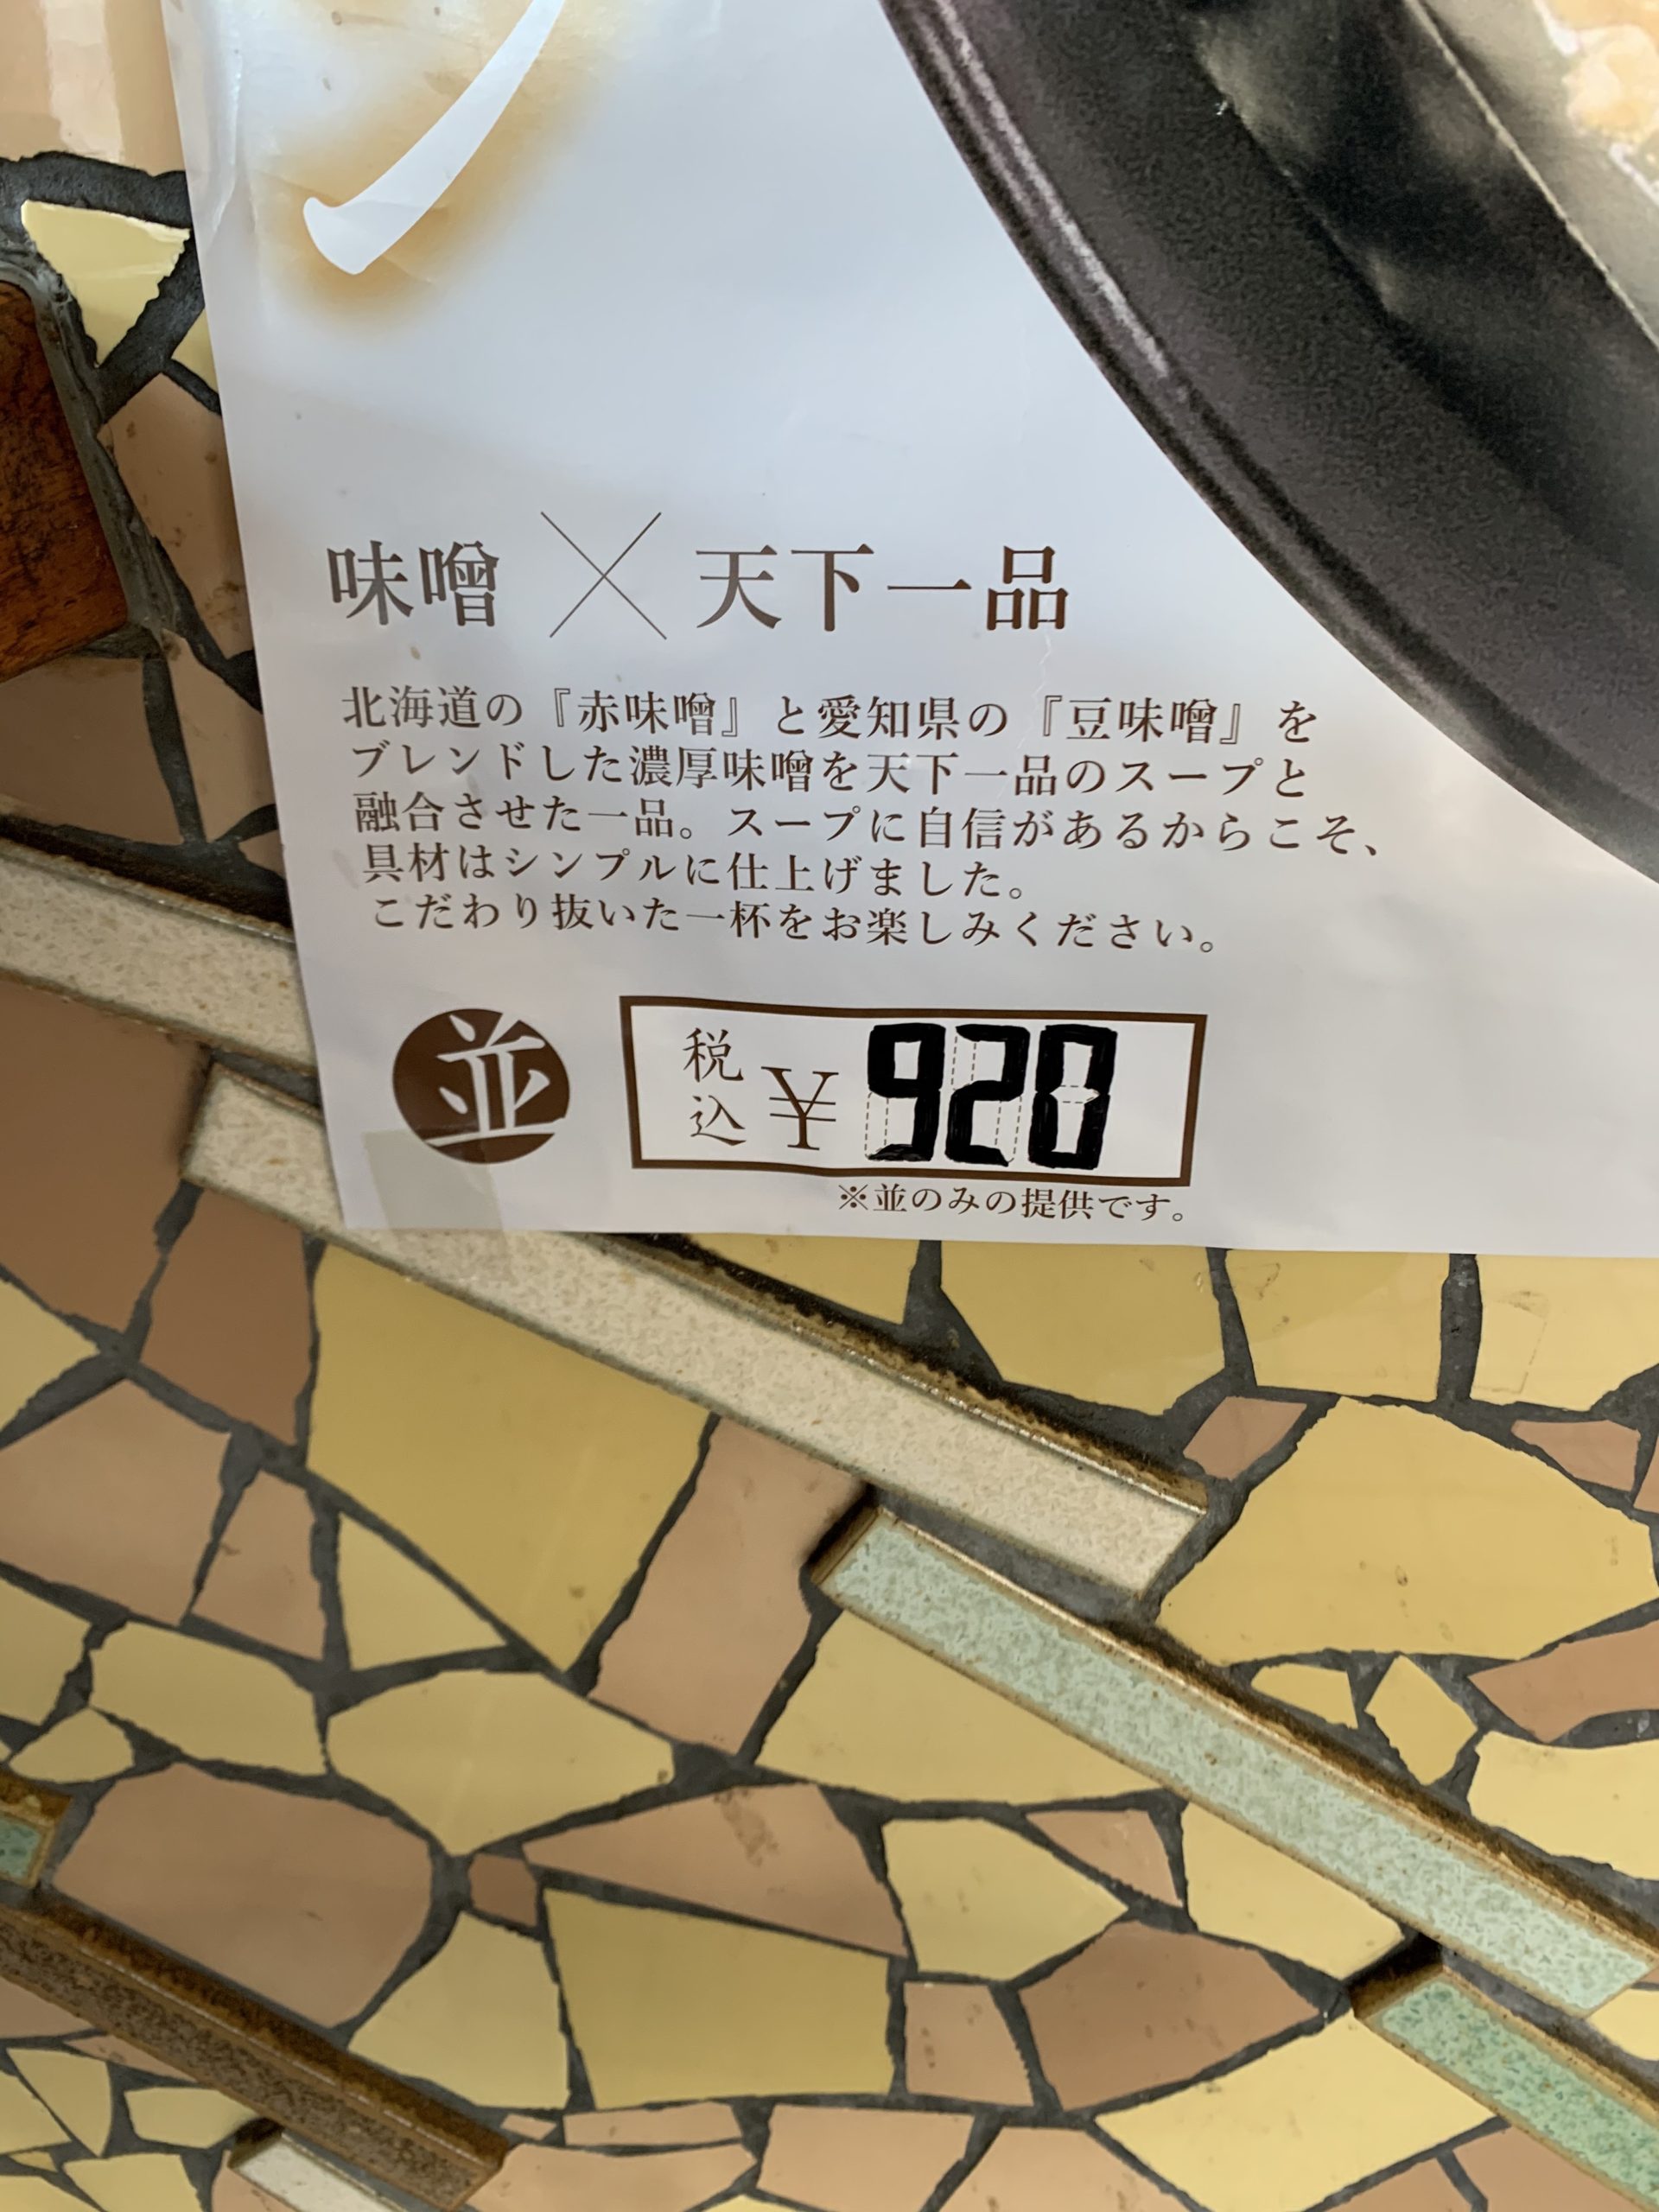 天下一品塚口店の味噌ラーメンは920円